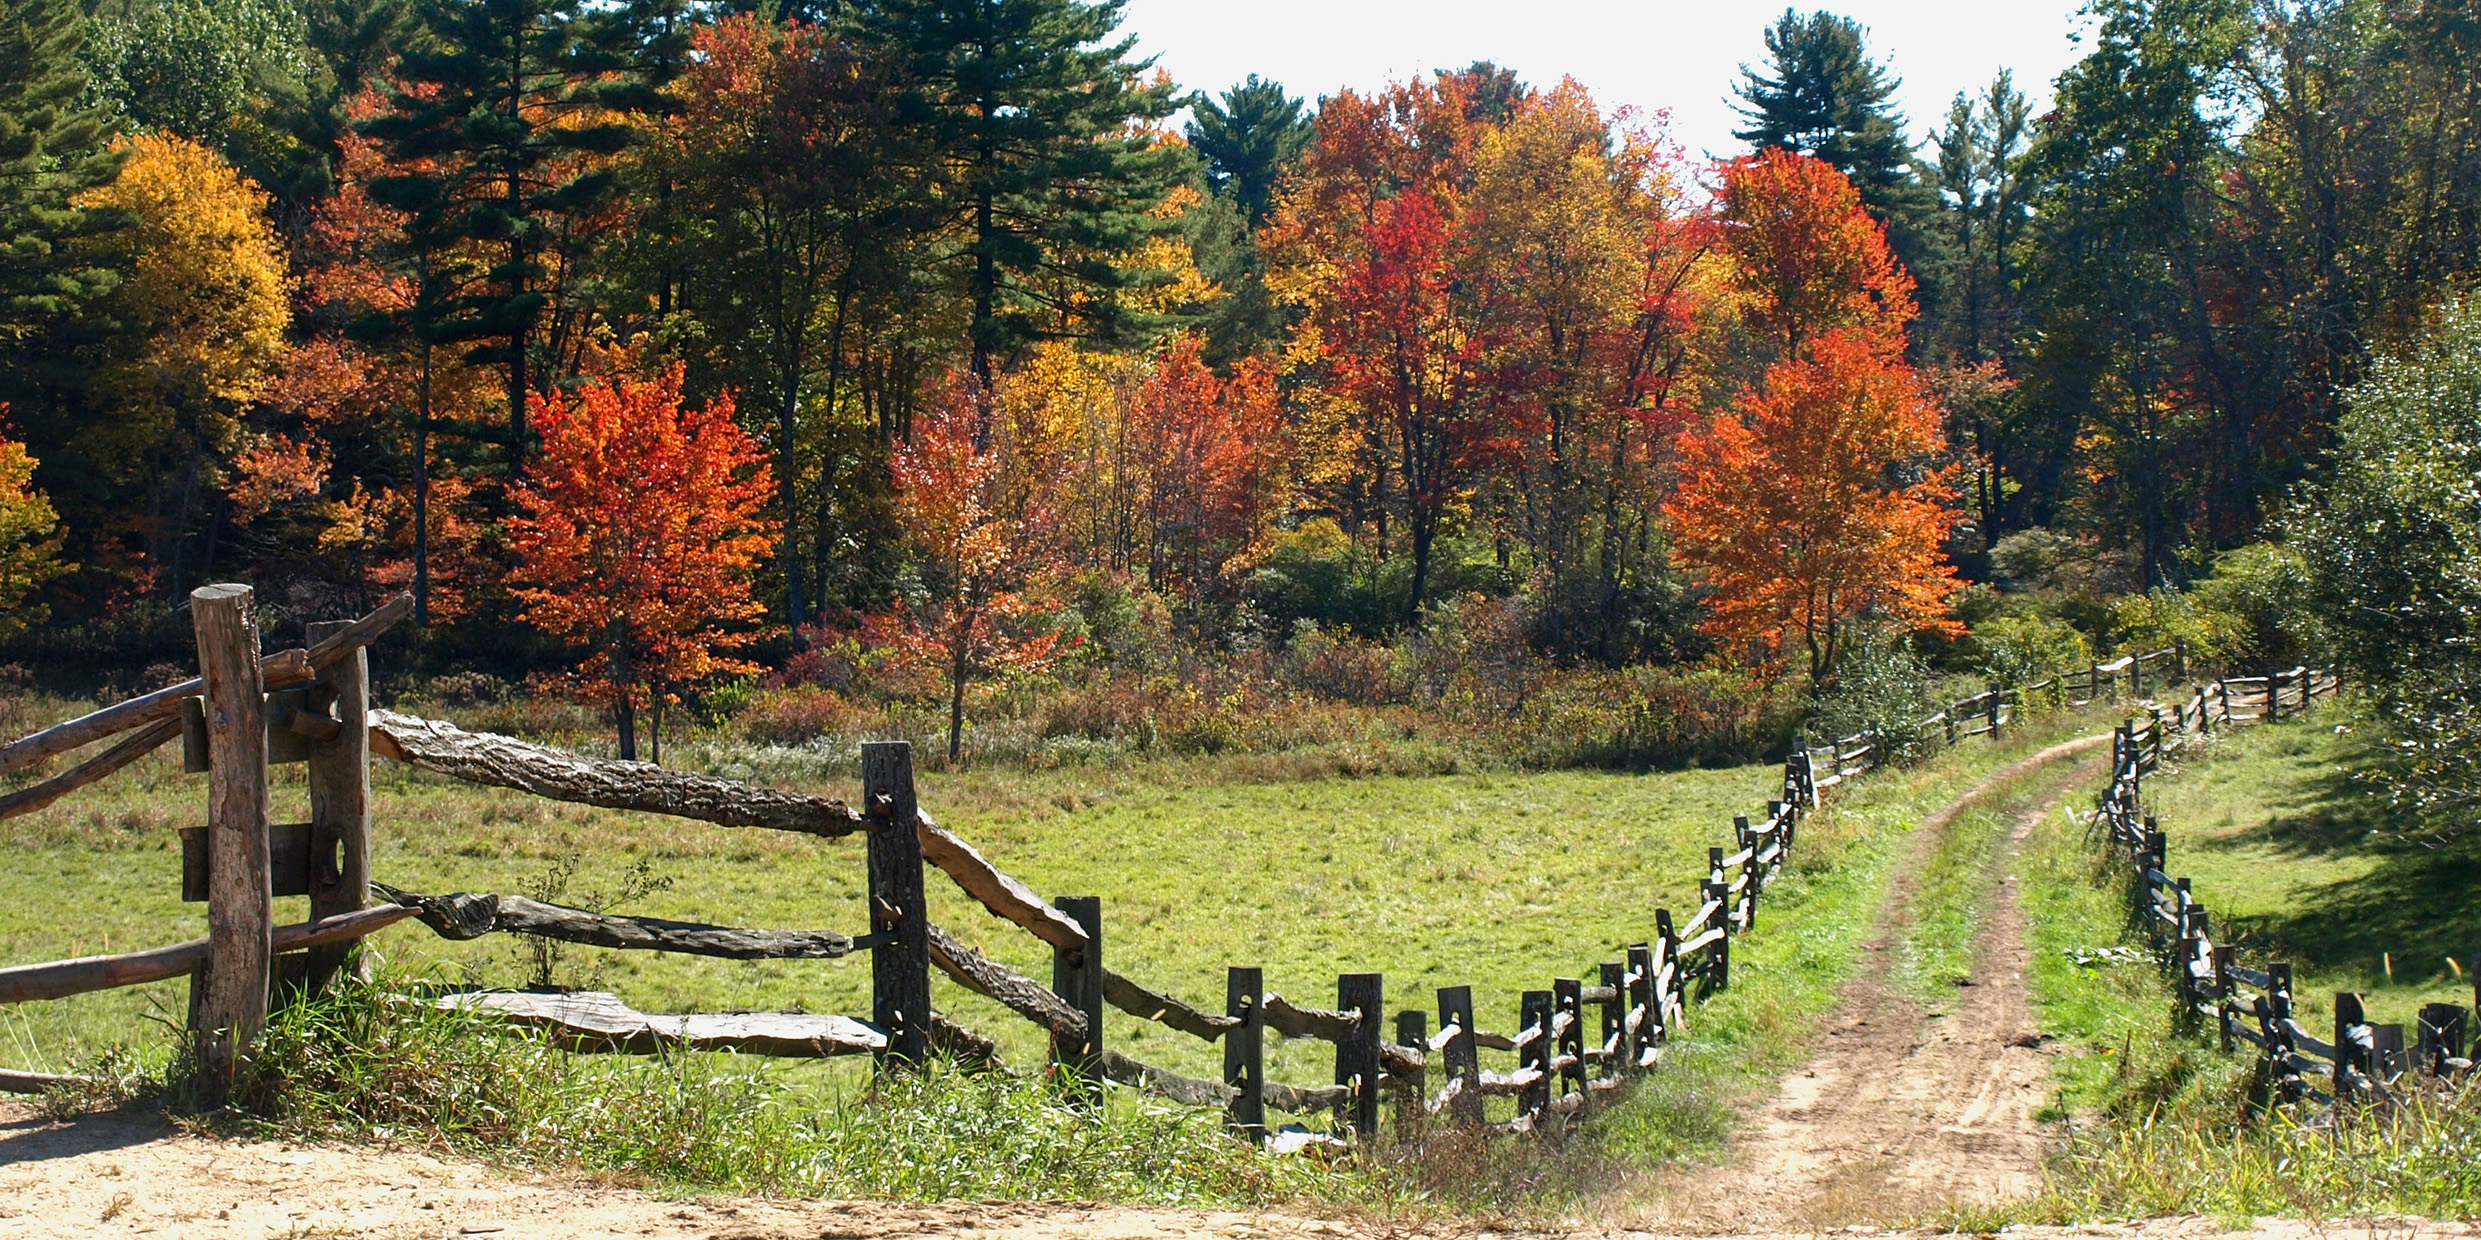 Image of New England woodland